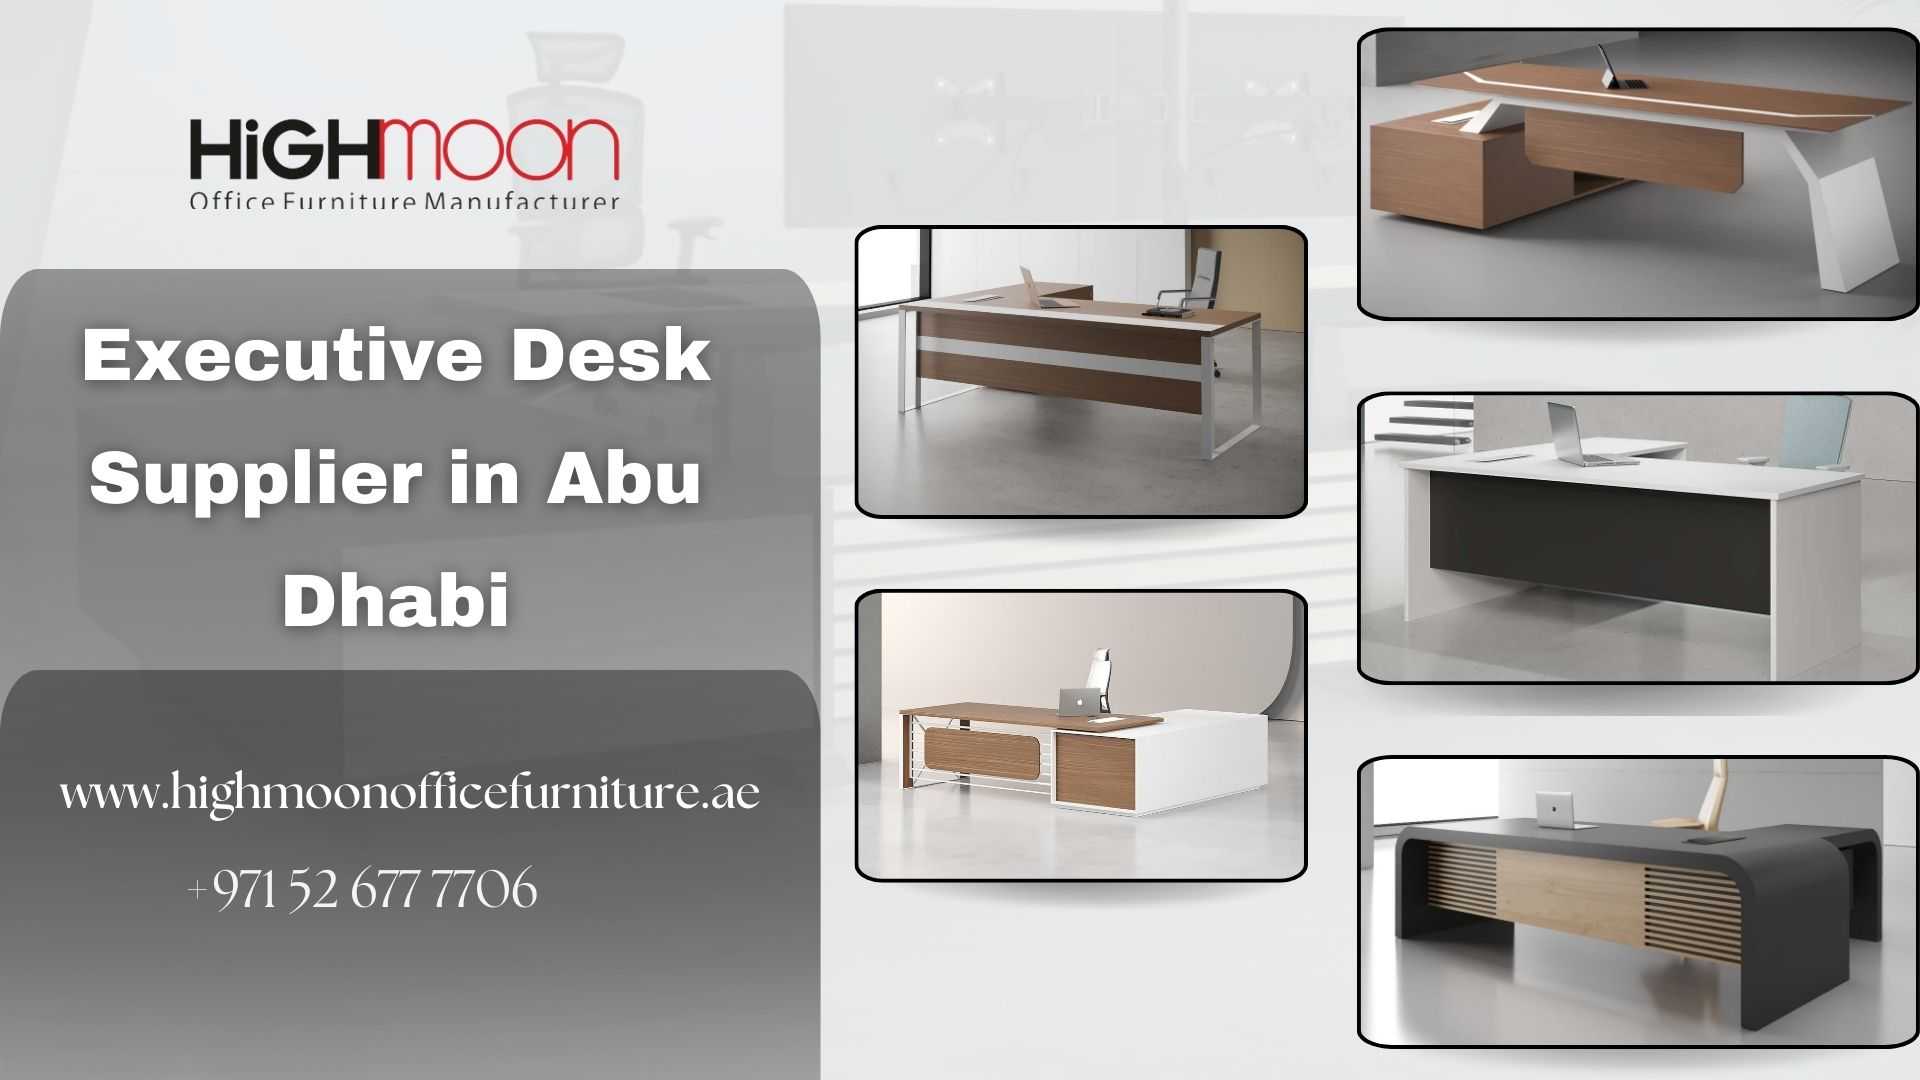 Executive Desk Supplier in Abu Dhabi, UAE